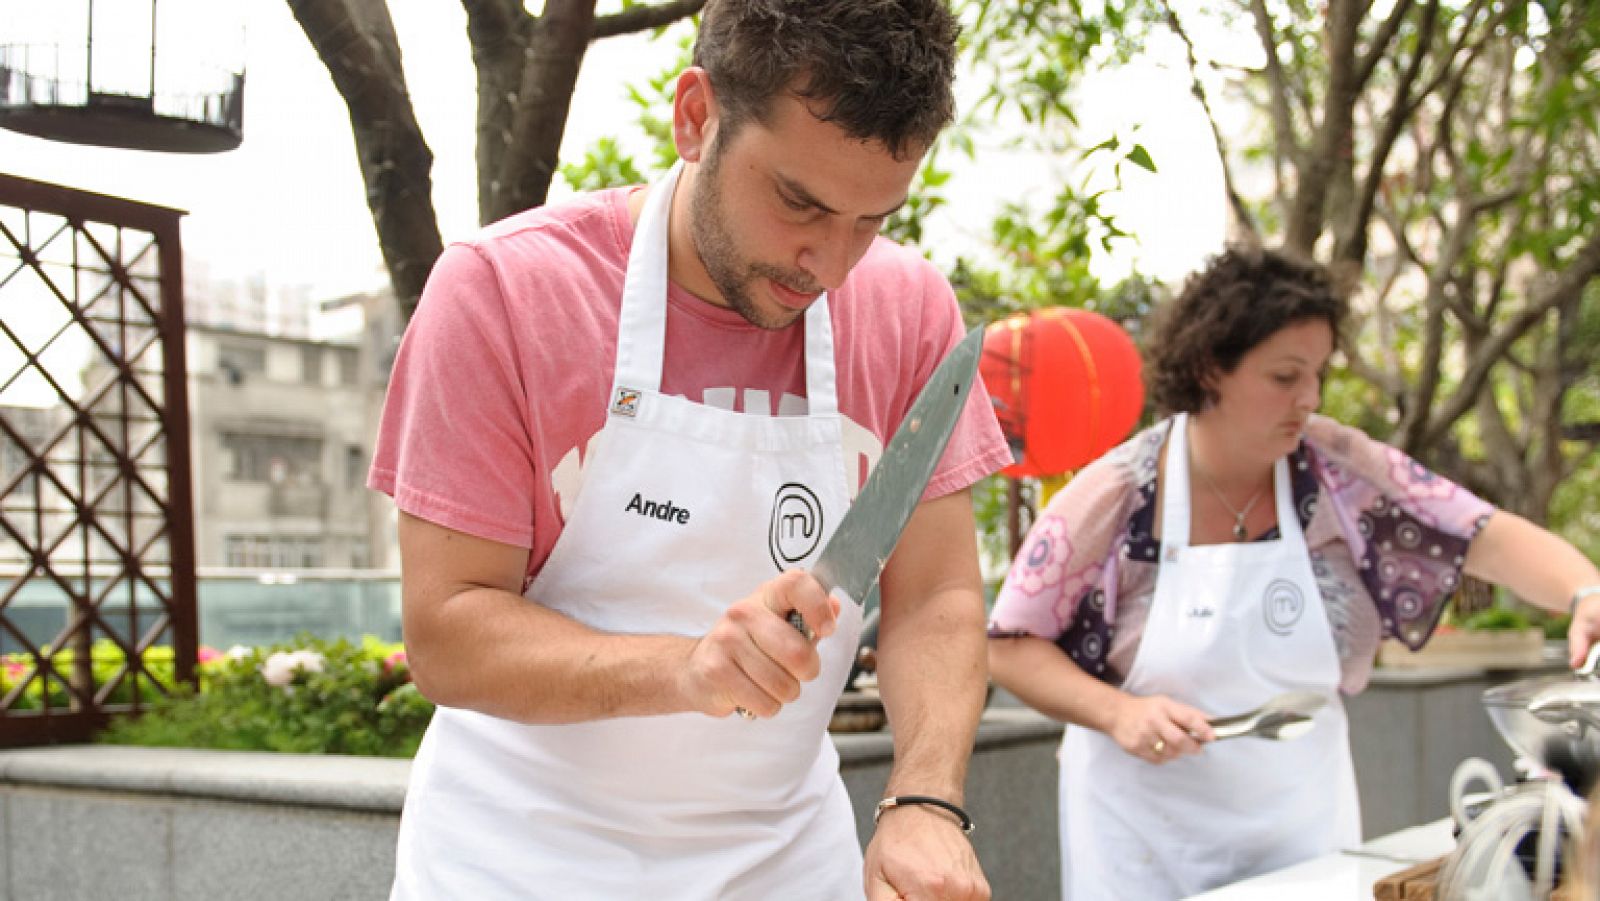 La mañana de la 1 - Arrancan los castings de 'Masterchef' para buscar al mejor cocinero amateur de España